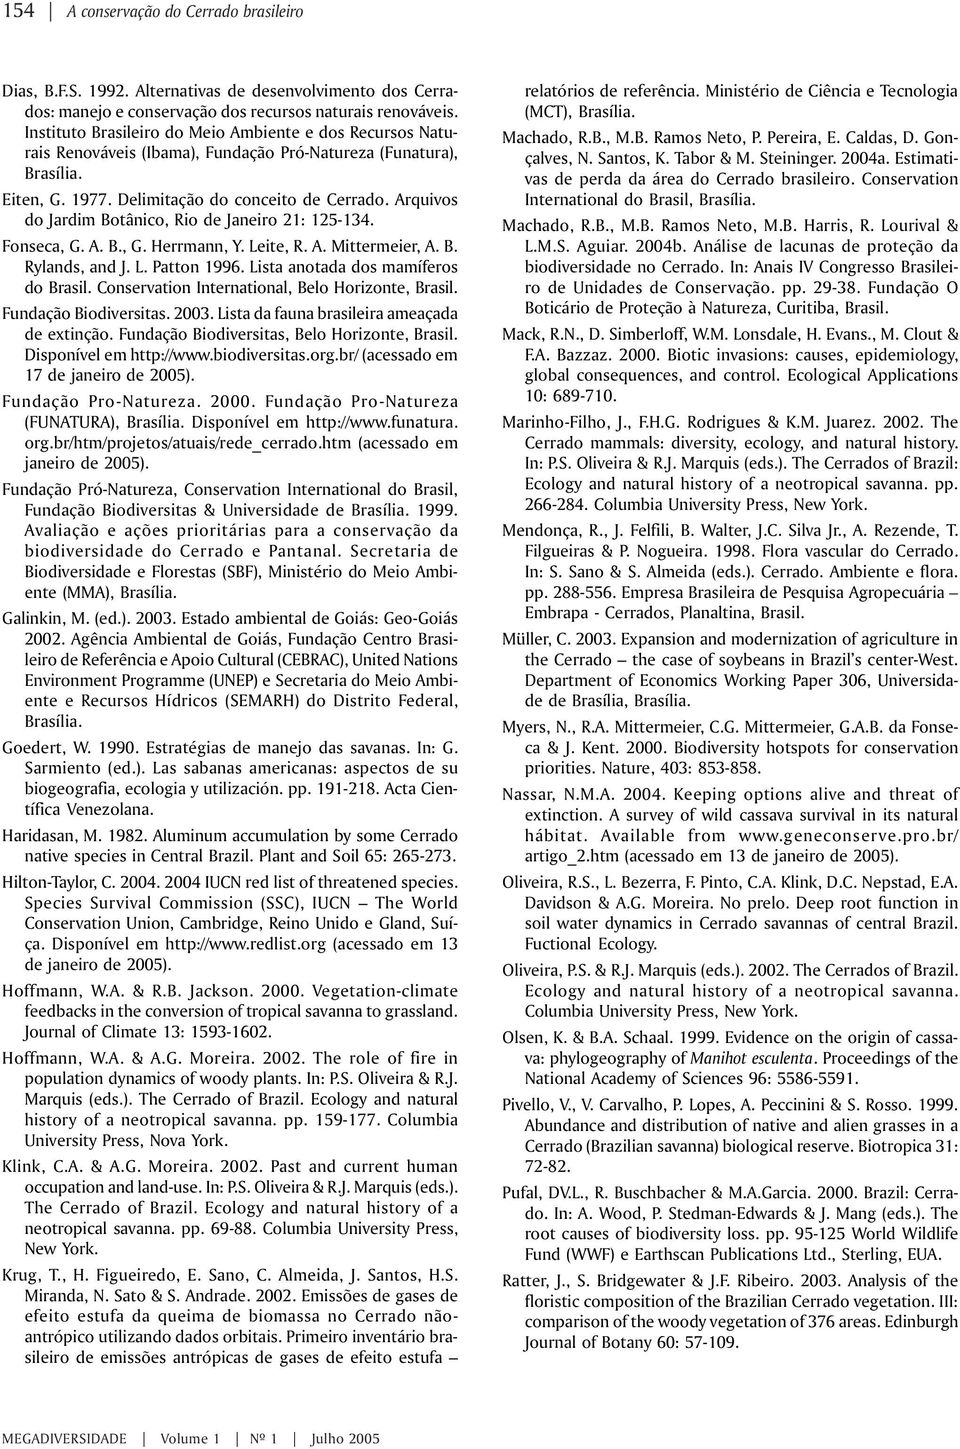 Arquivos do Jardim Botânico, Rio de Janeiro 21: 125-134. Fonseca, G. A. B., G. Herrmann, Y. Leite, R. A. Mittermeier, A. B. Rylands, and J. L. Patton 1996. Lista anotada dos mamíferos do Brasil.